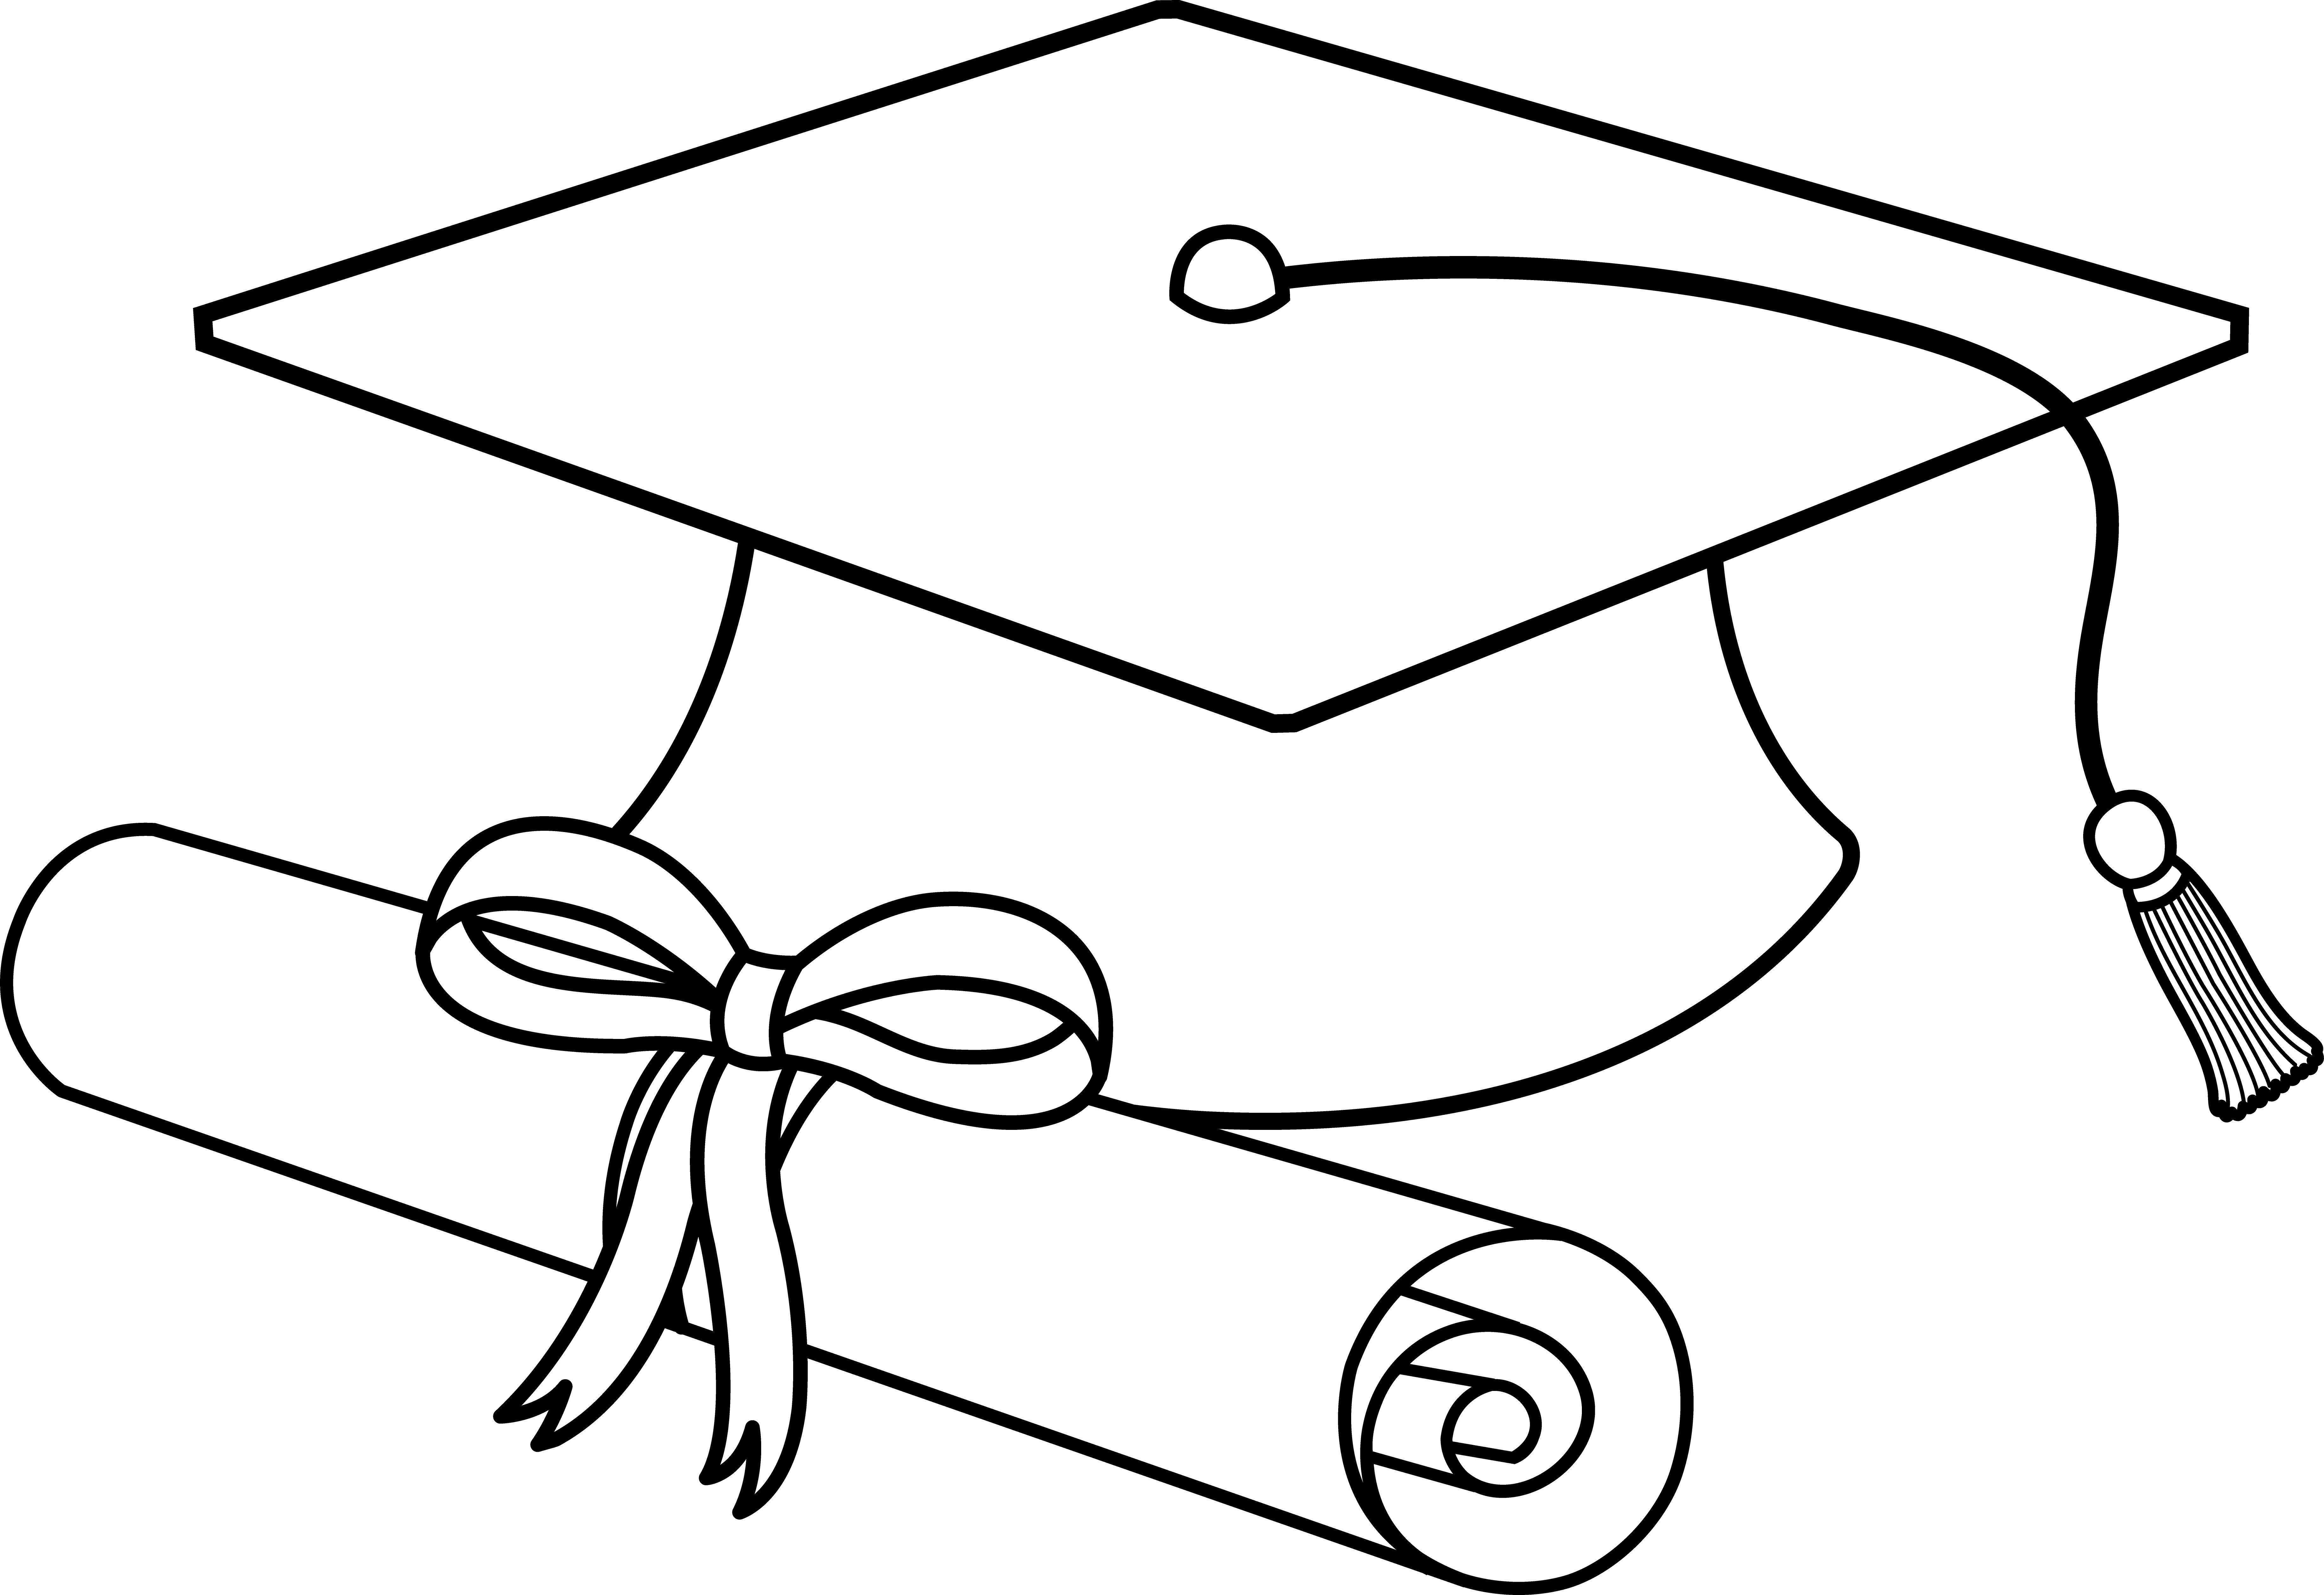 Clip Art Graduation Cap - cli